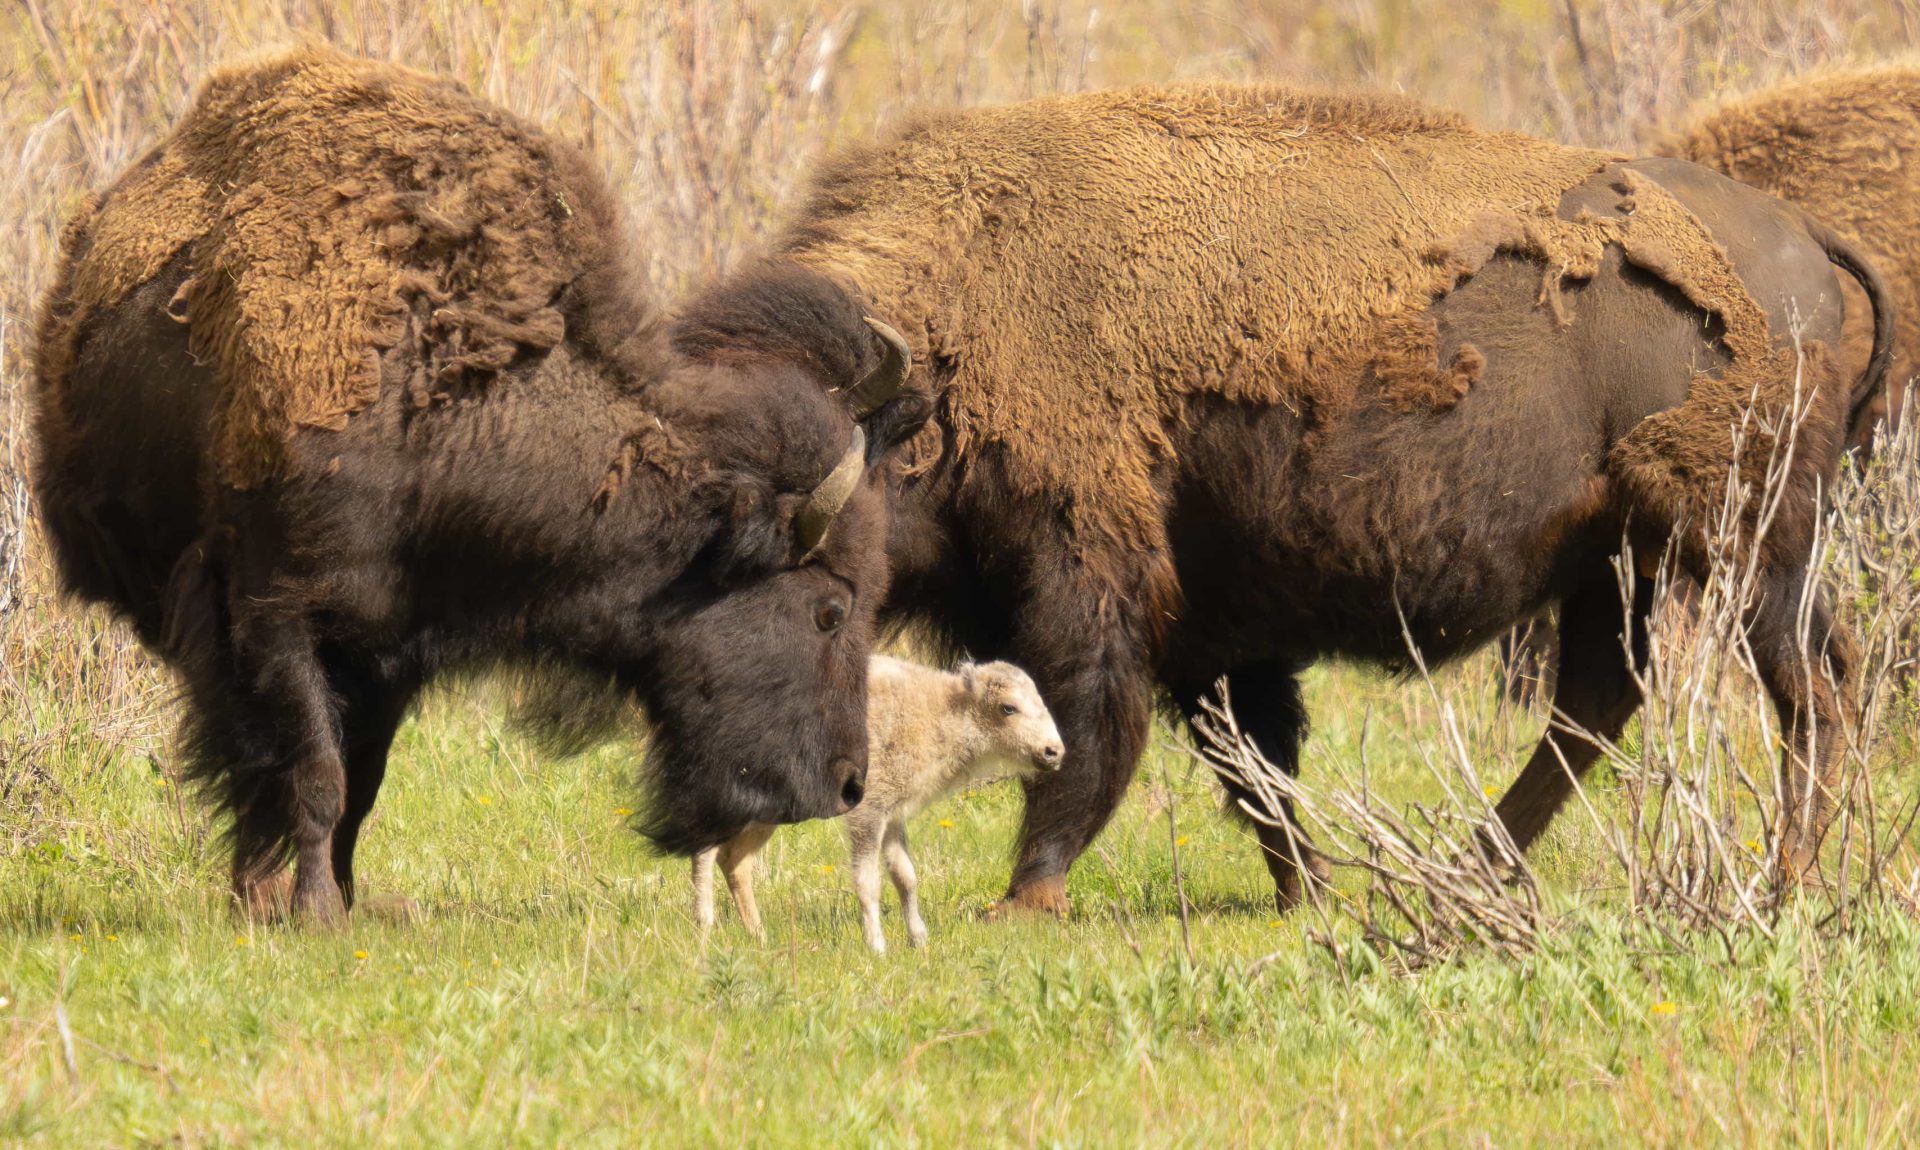 rare white bison in yellowstone